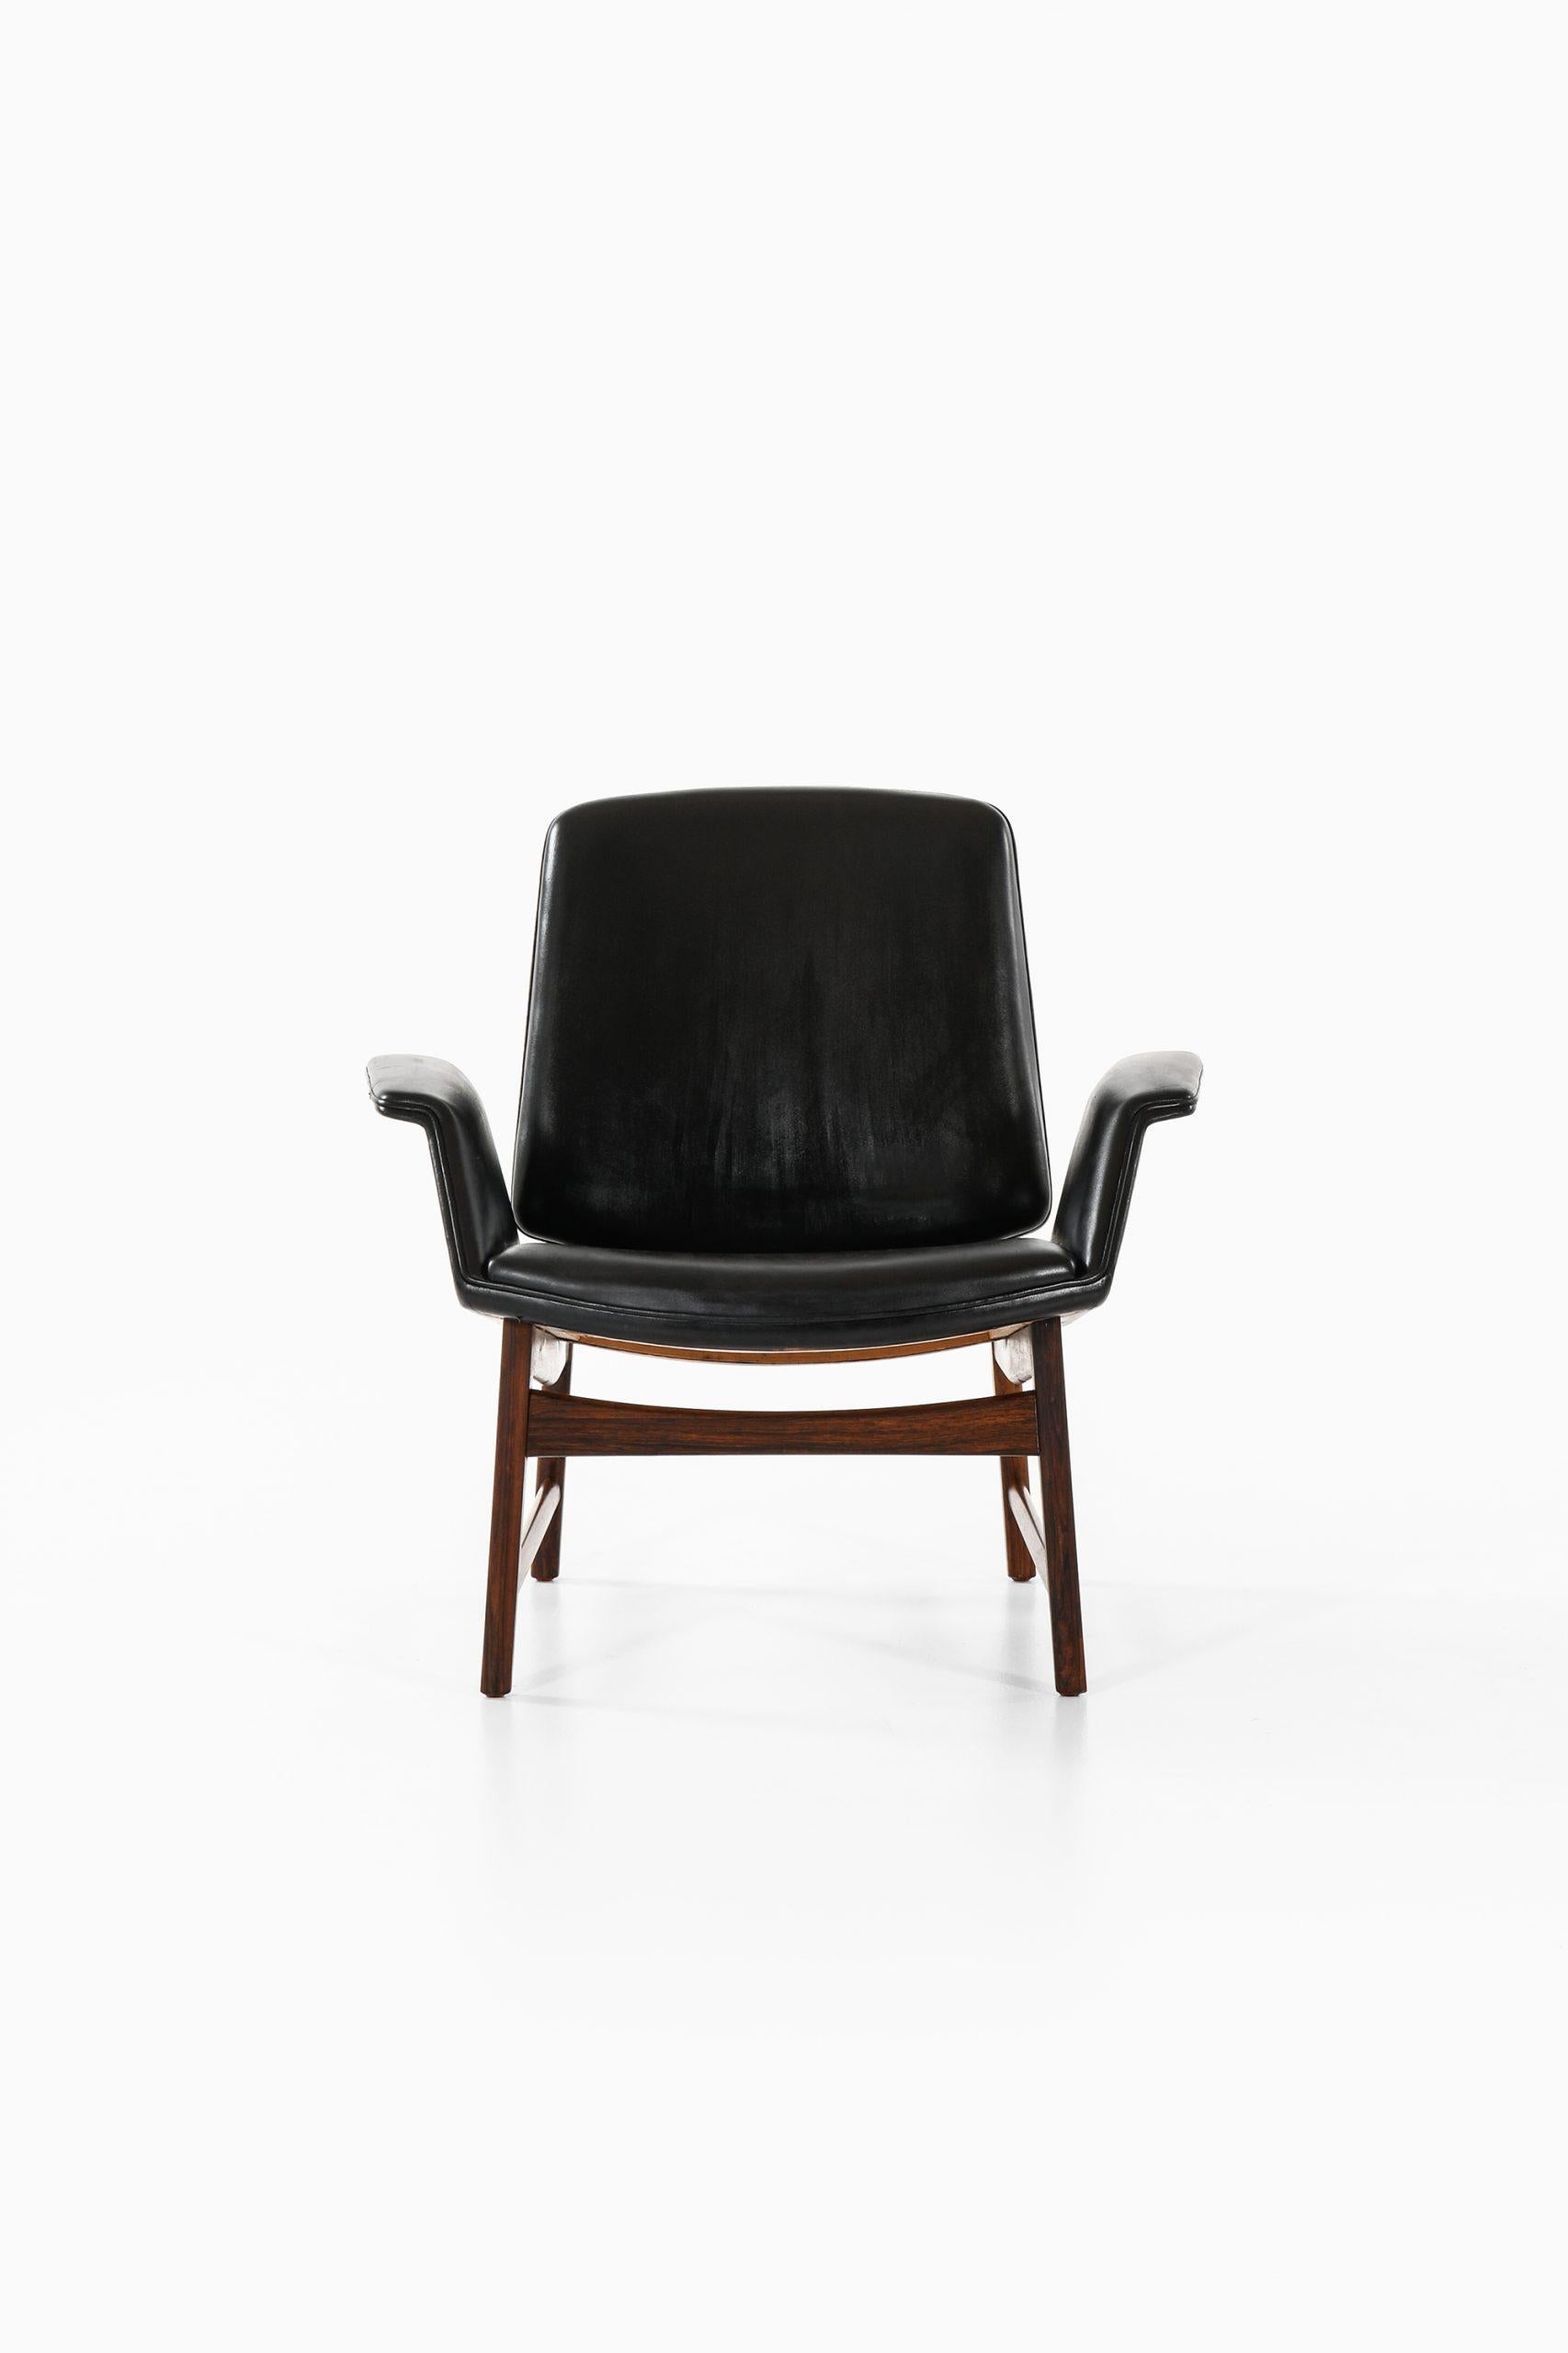 Rare easy chair model 451 designed by Illum Wikkelsø. Produced by Aarhus Polstrermøbelfabrik in Denmark.